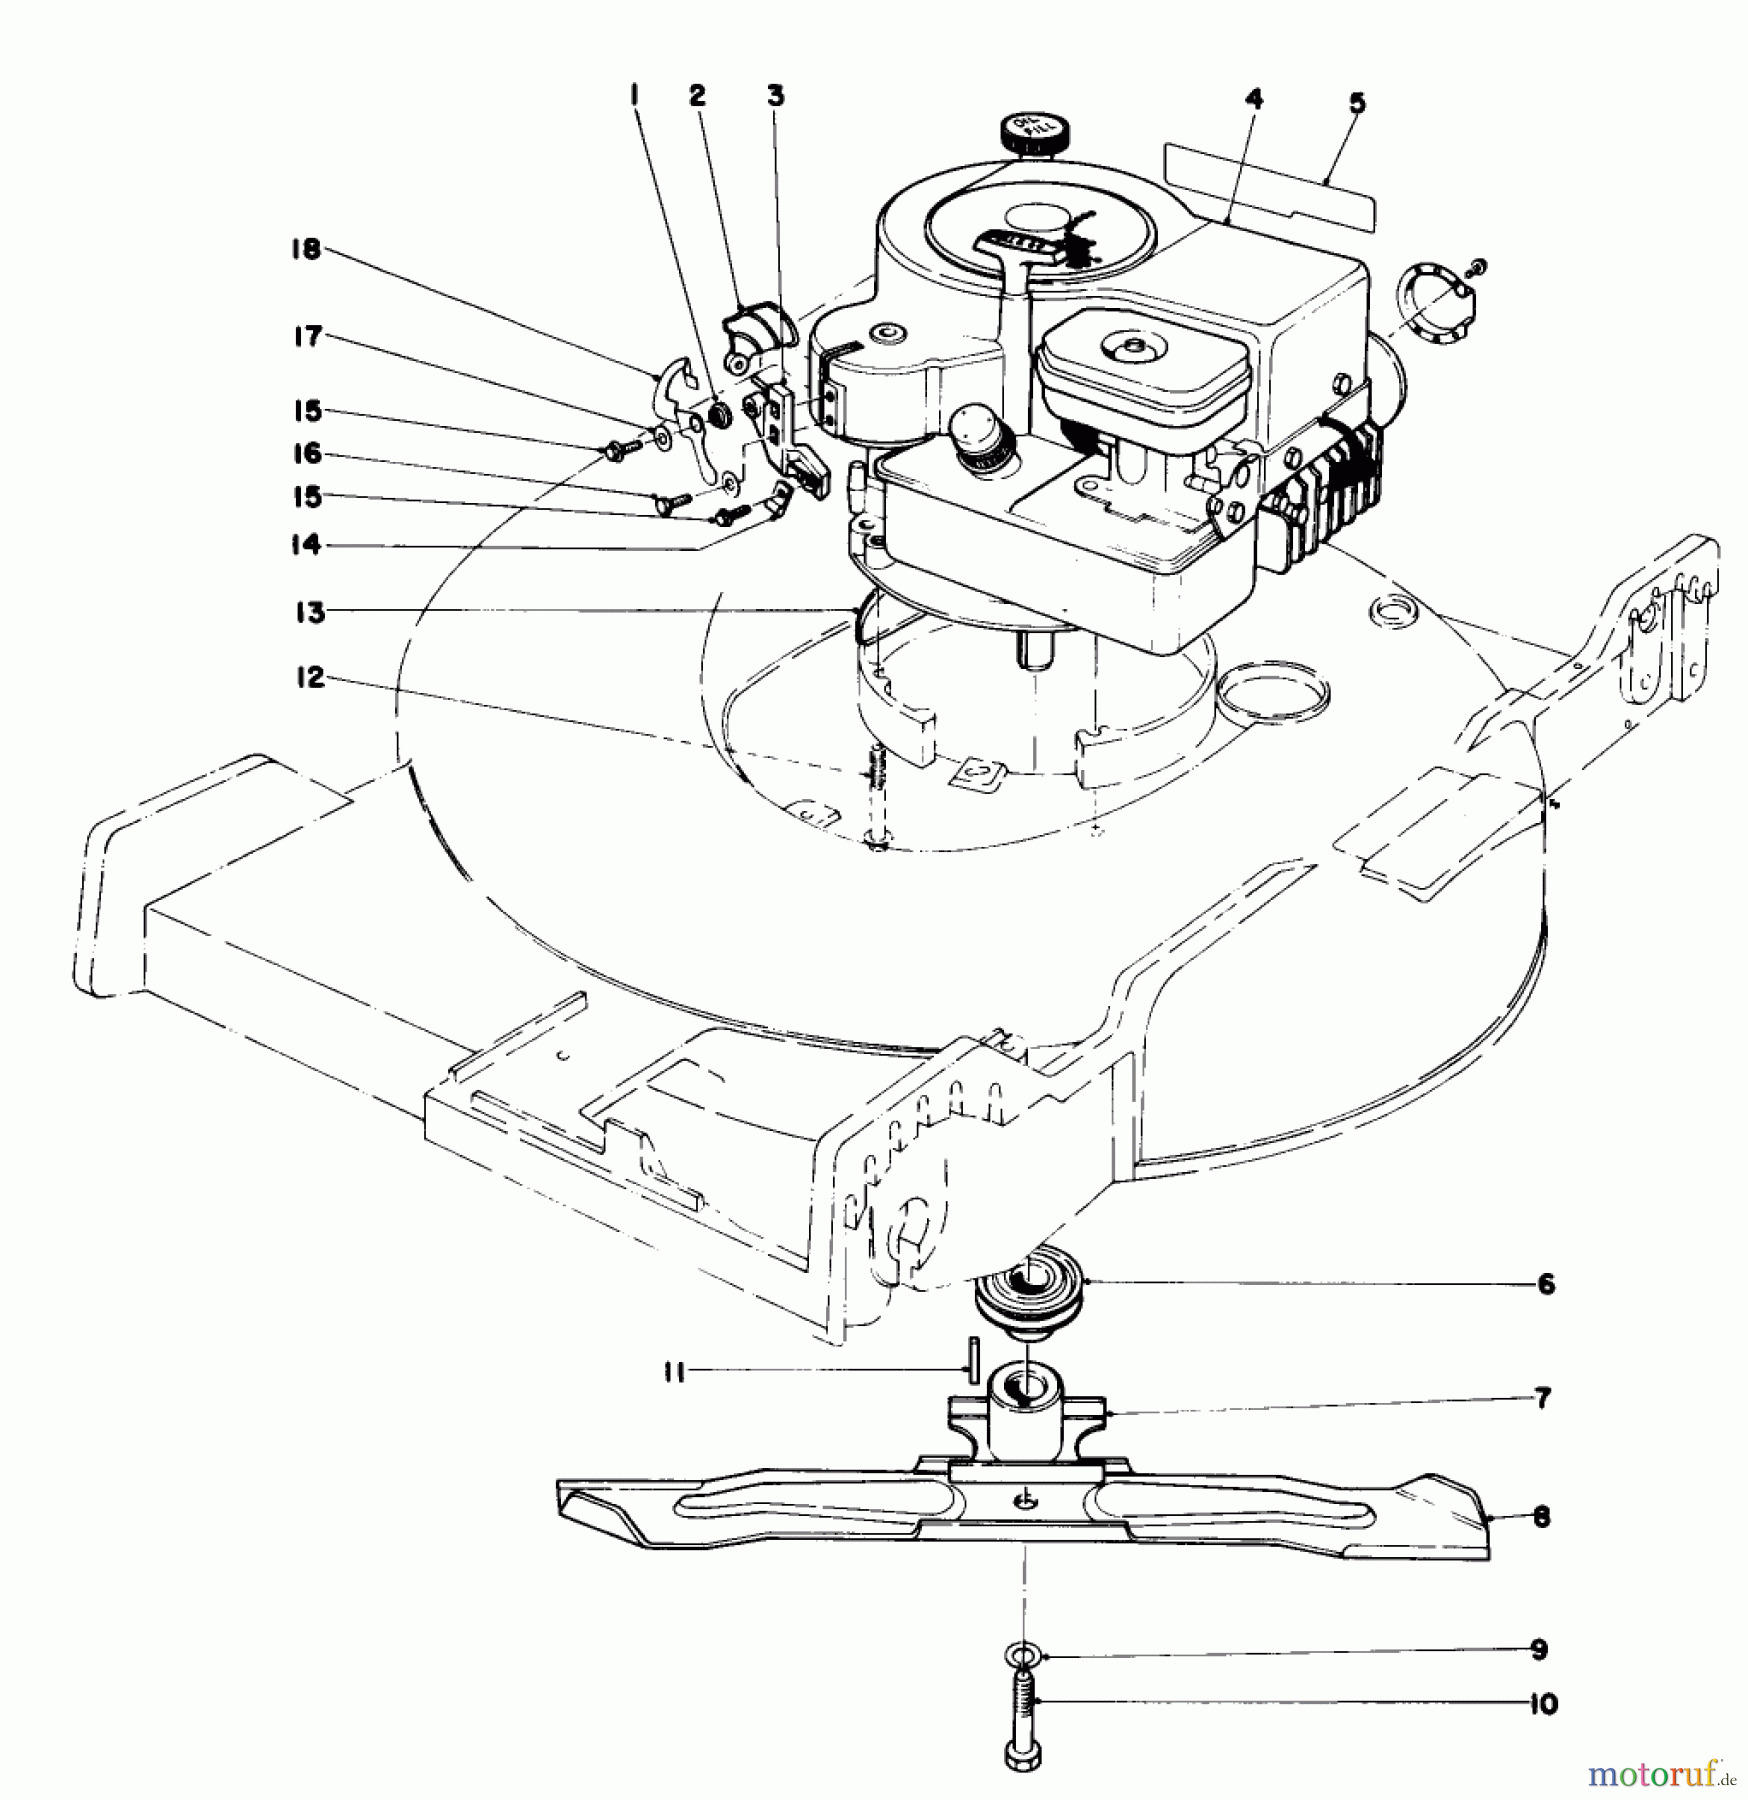  Toro Neu Mowers, Walk-Behind Seite 1 20765 - Toro Lawnmower, 1981 (1000001-1999999) ENGINE ASSEMBLY